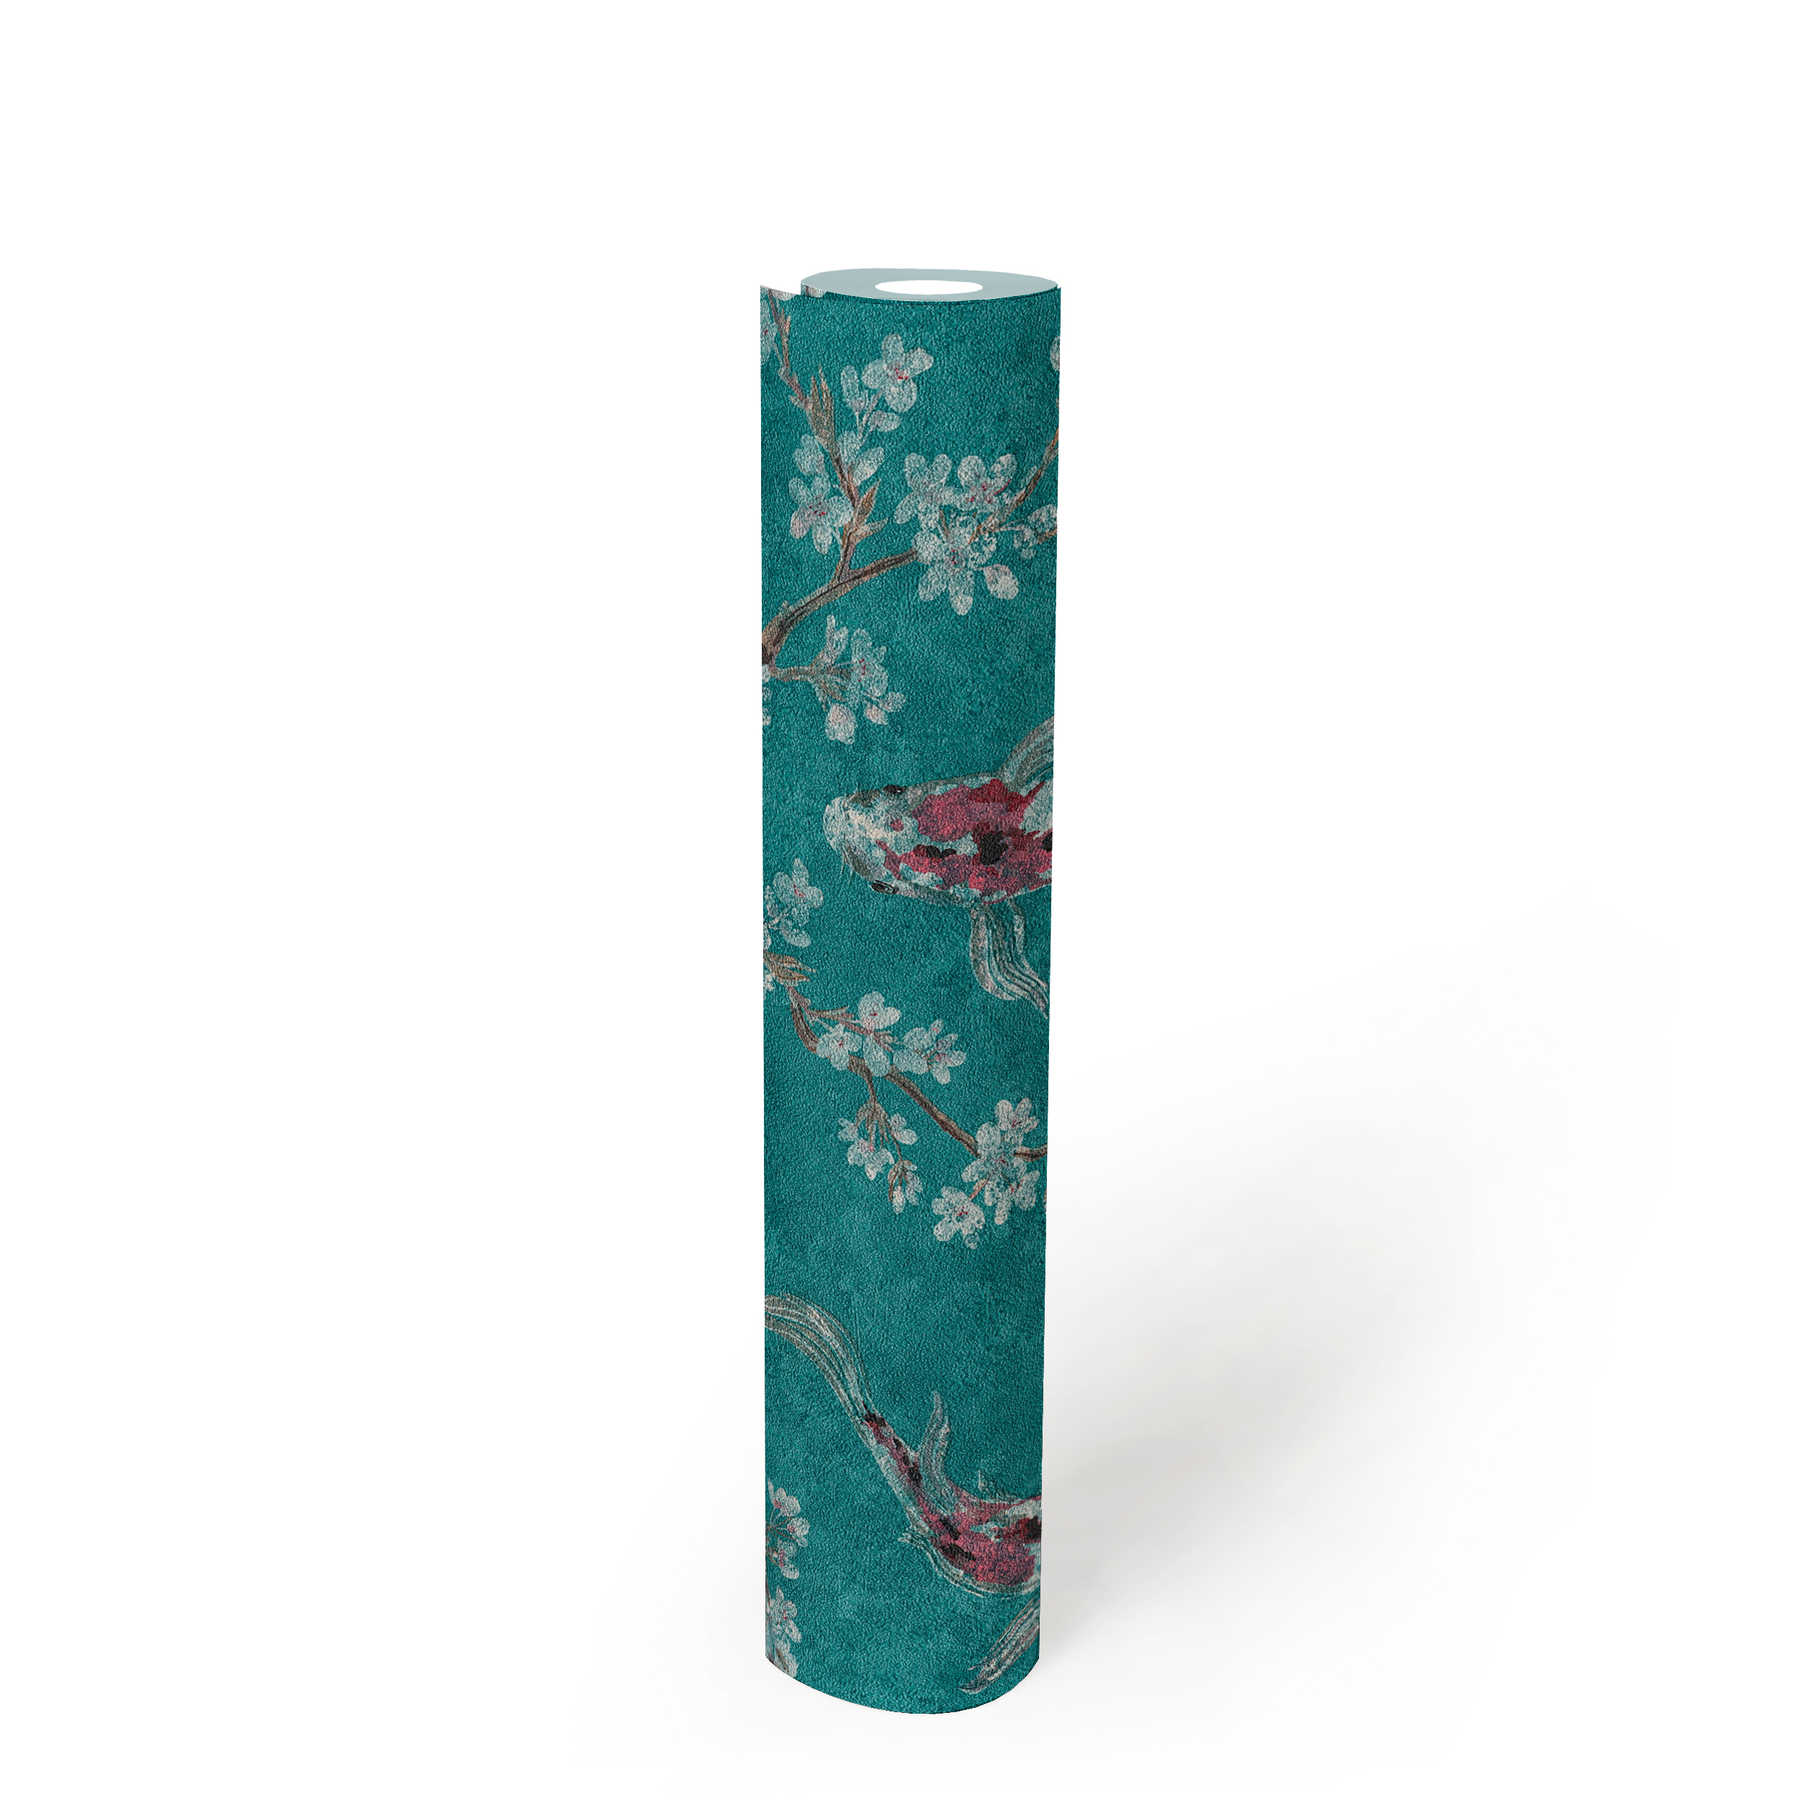             Papier peint intissé avec motif de koï dans le style asiatique - bleu, vert, rouge
        